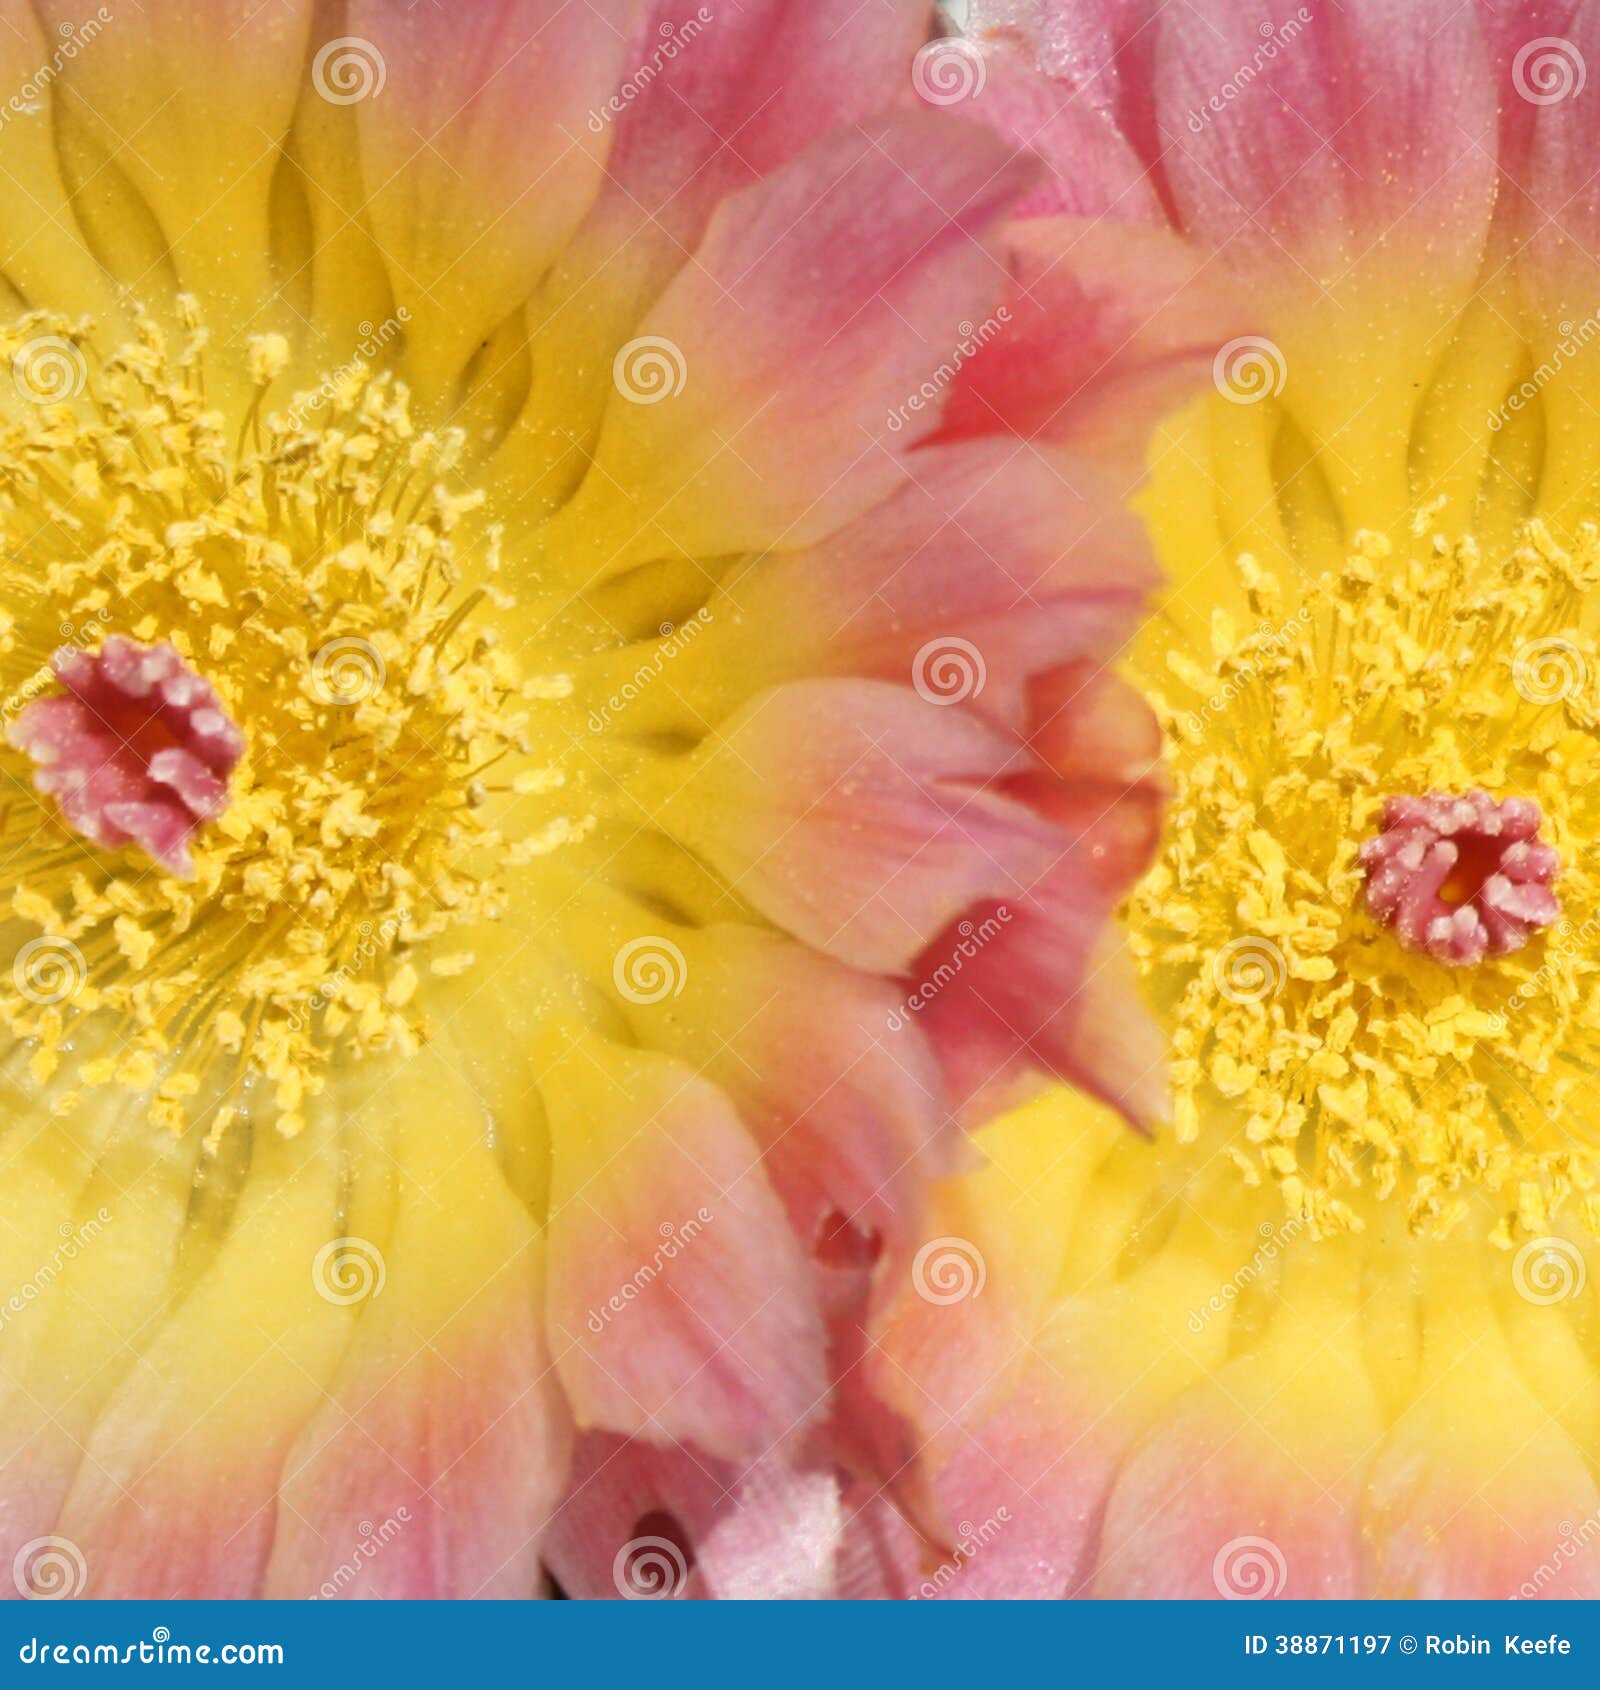 Fiori Gialli E Rosa.Fiori Gialli E Rosa Del Cactus Immagine Stock Immagine Di